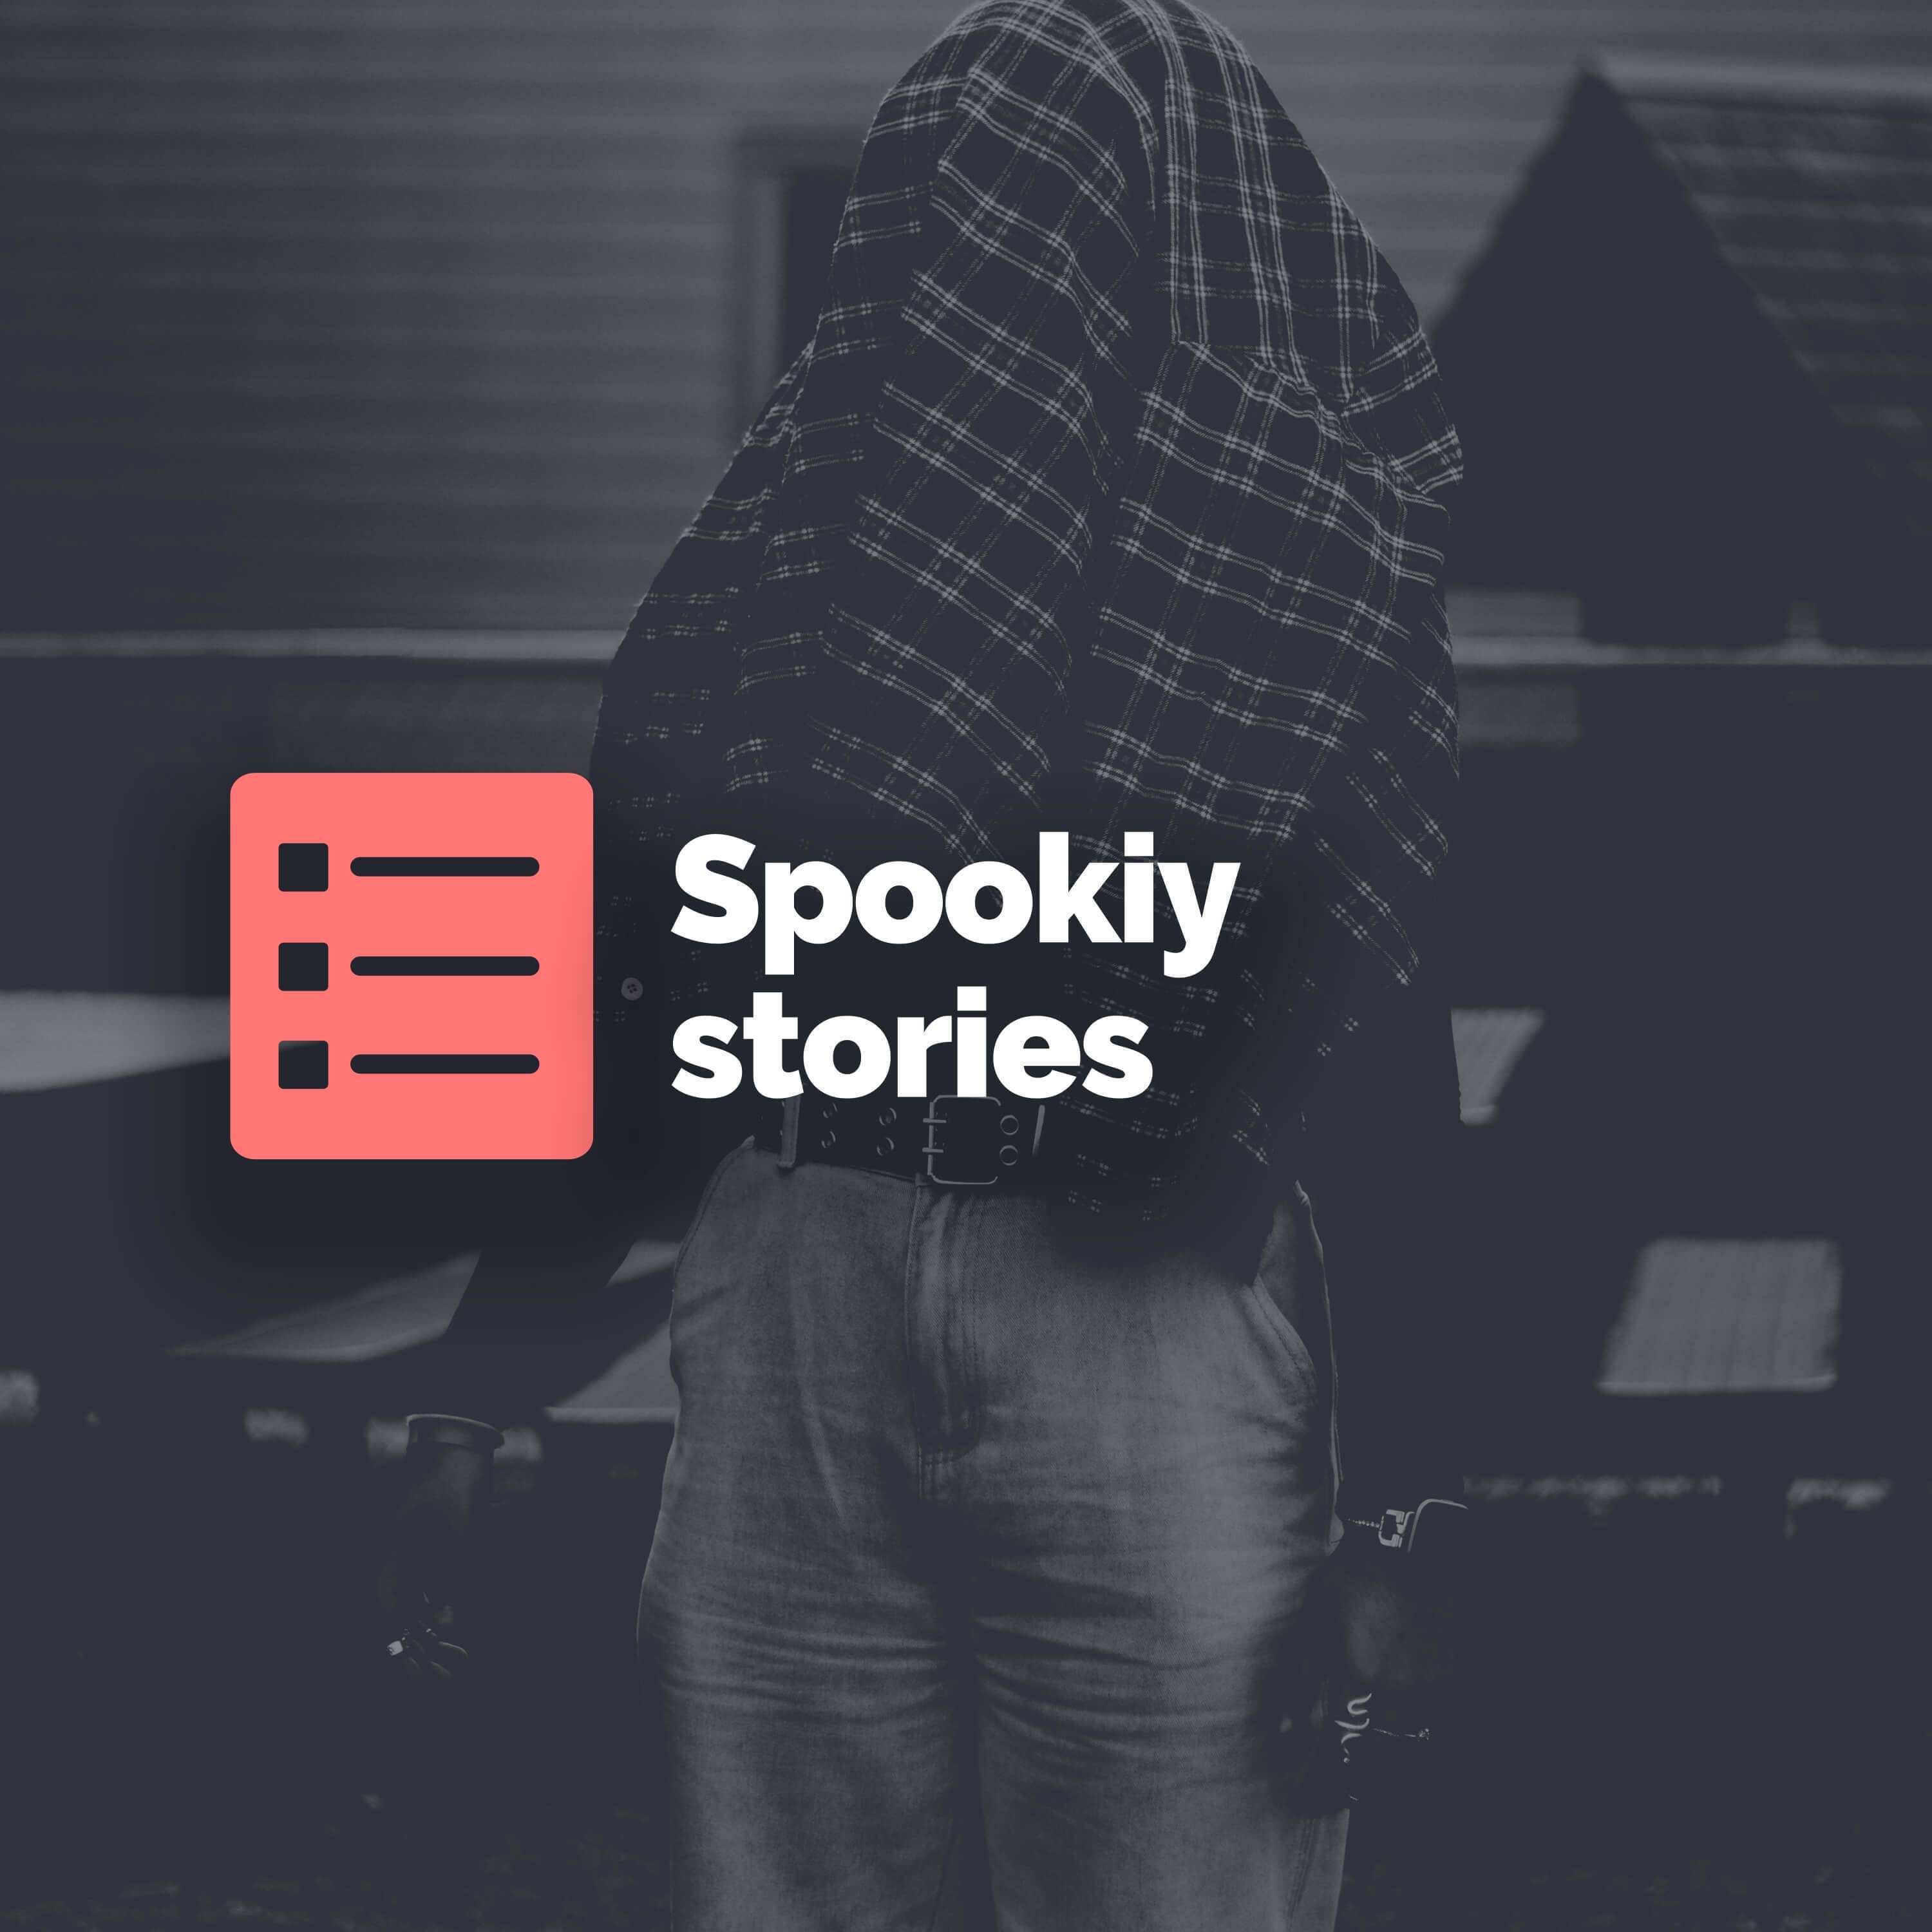 Spooky stories: Part 2